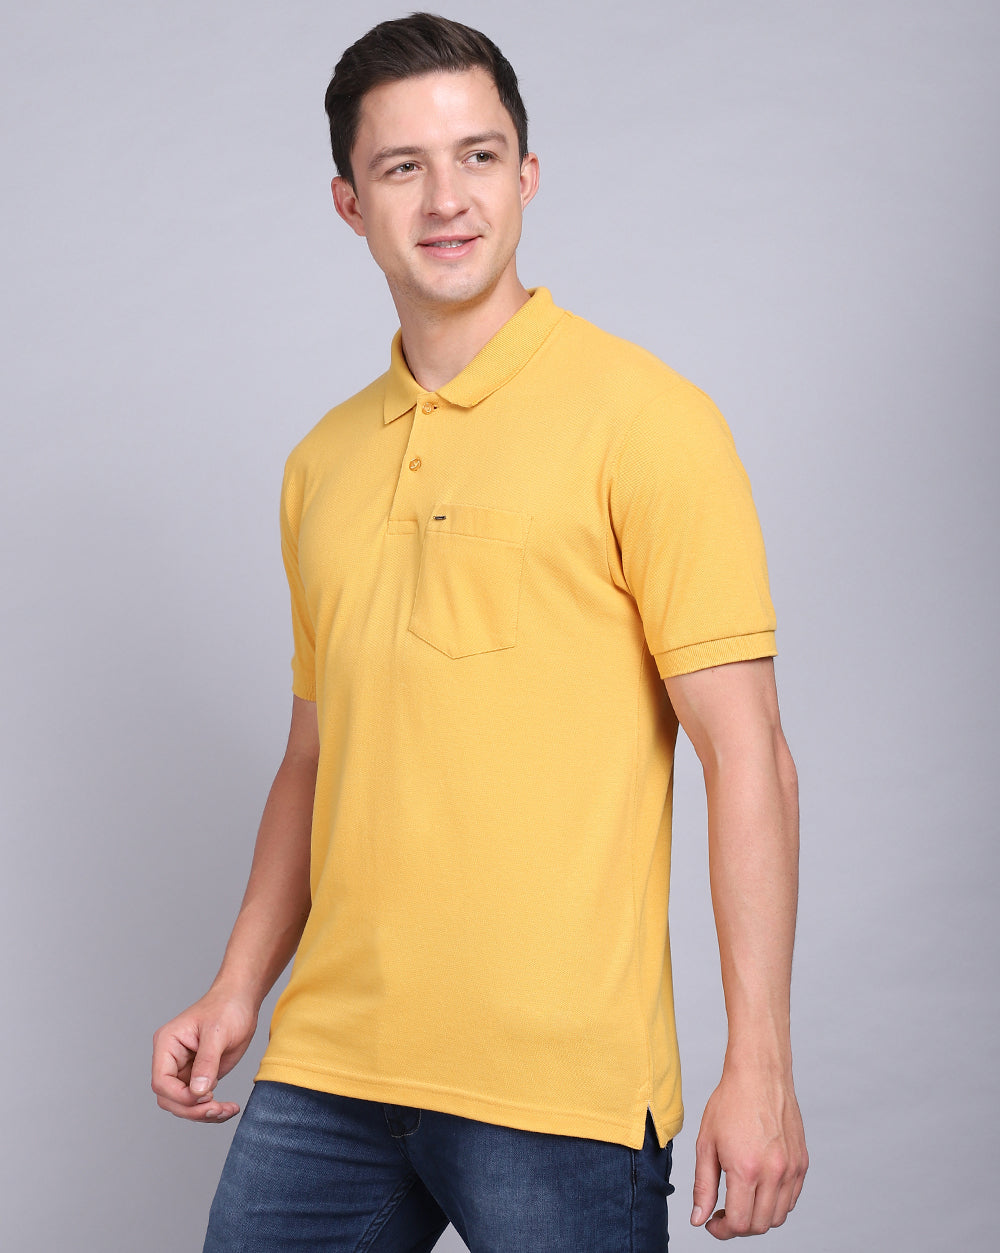 Regular Fit 2 Button Polo T-Shirt Mustard